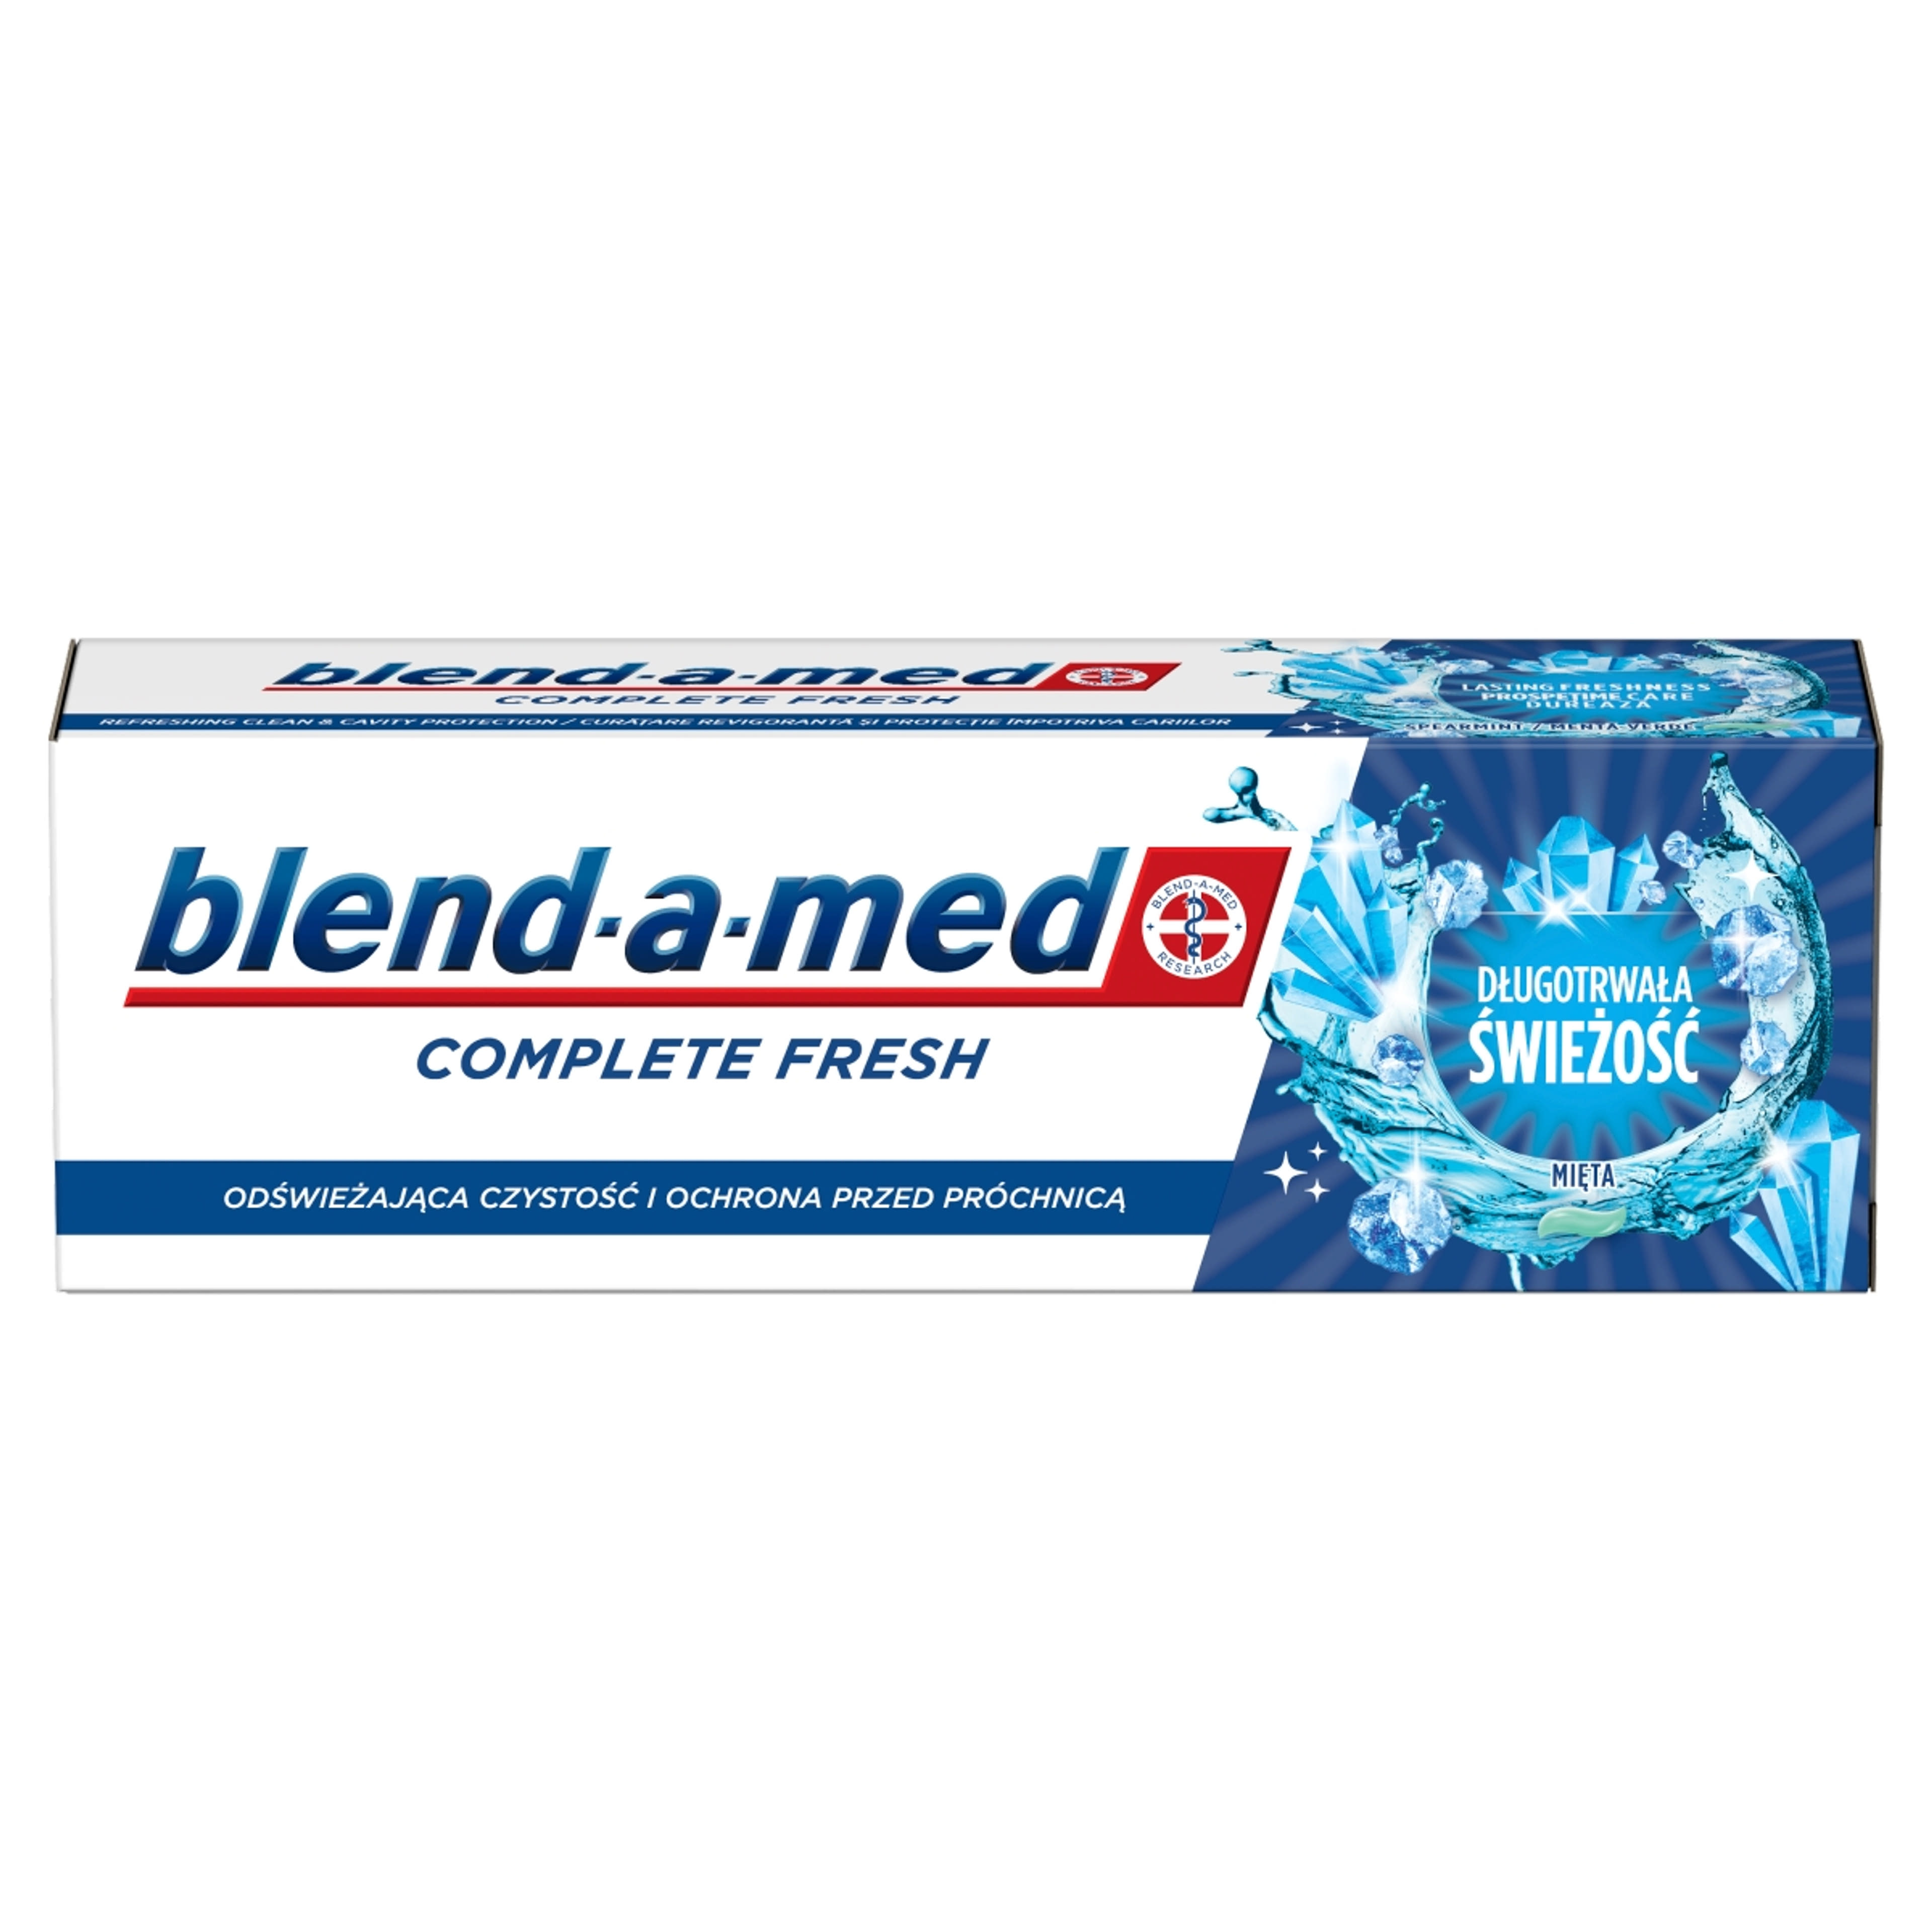 Blend-a-med Complete Fresh Lasting Freshness fogkrém - 75 ml-2